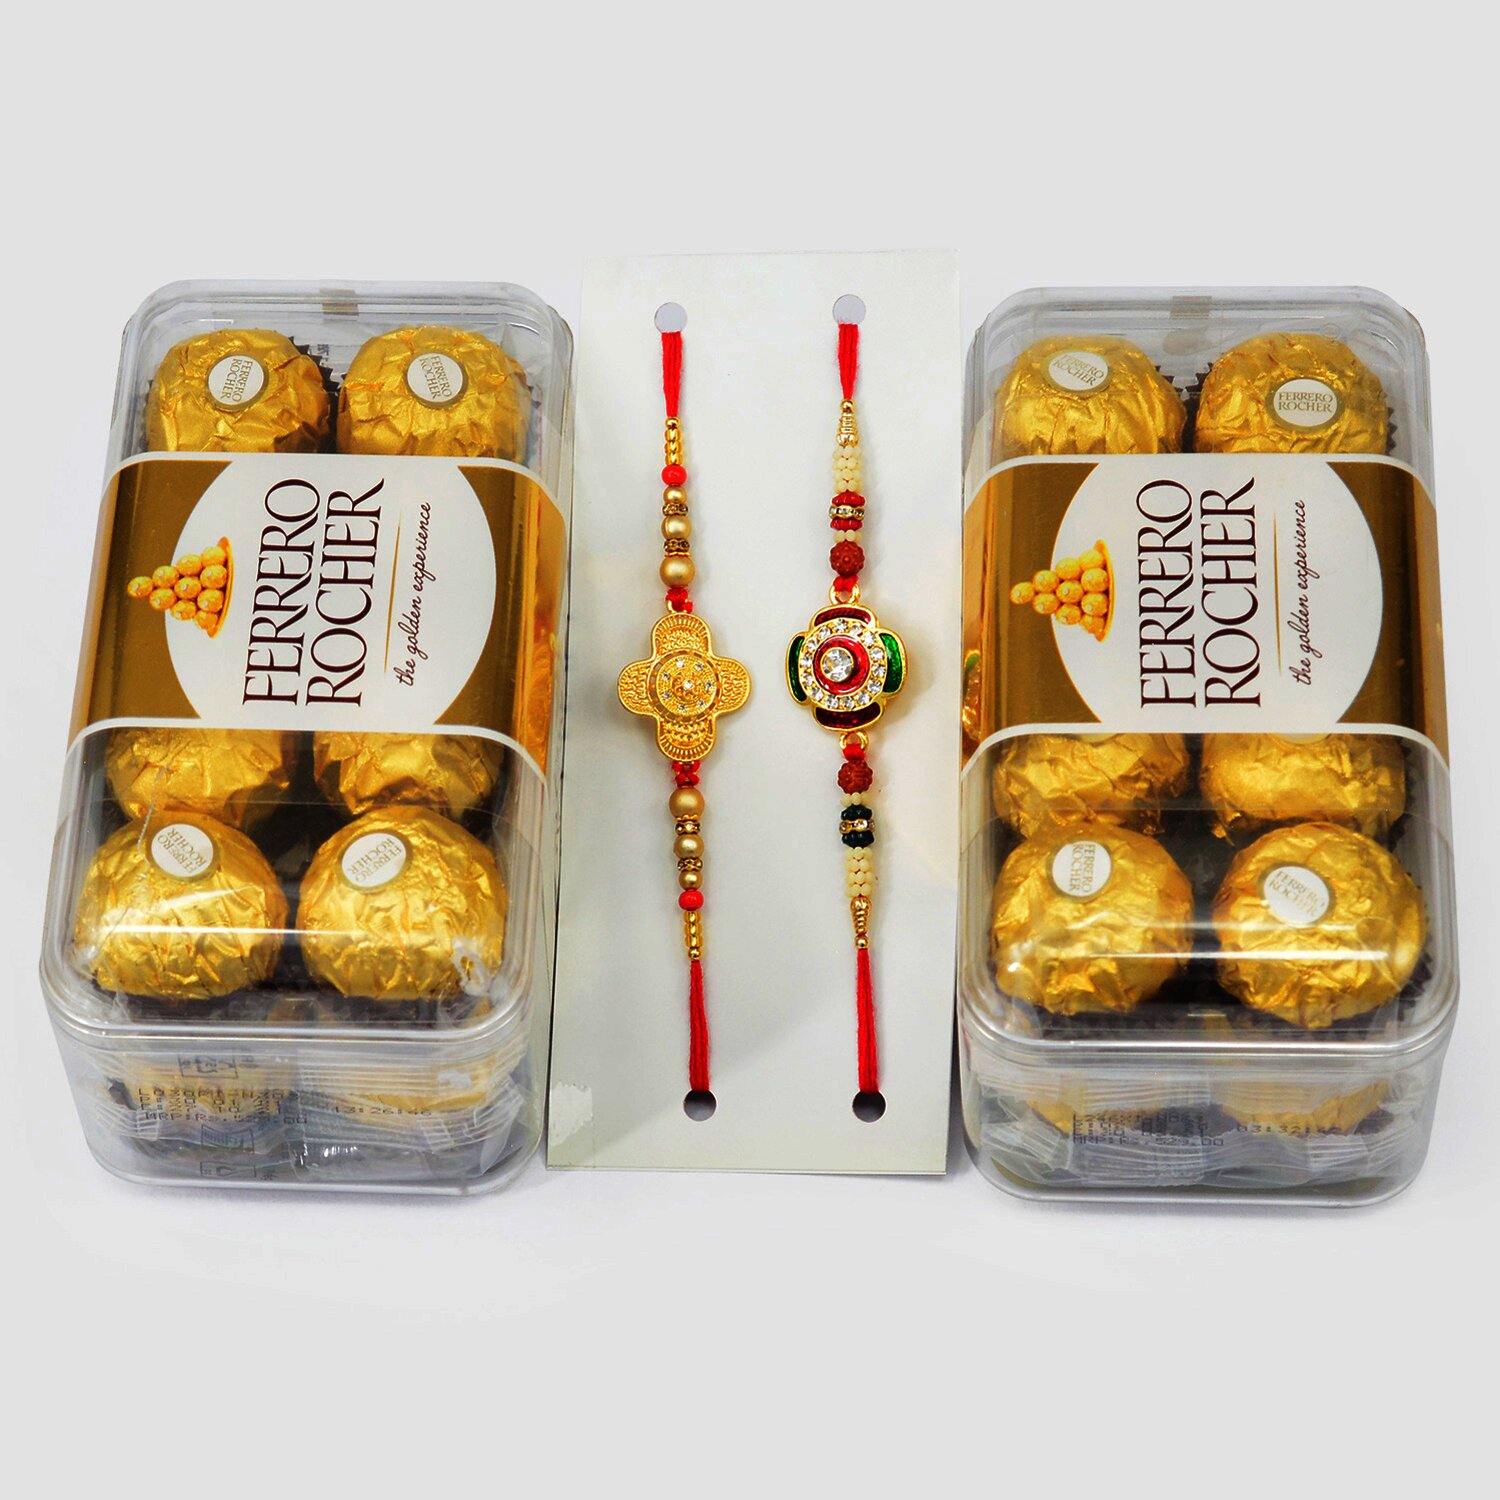 Amazing Set of 2 Rakhis and 2 Ferrero Rocher 16 Pc Chocolate Box 